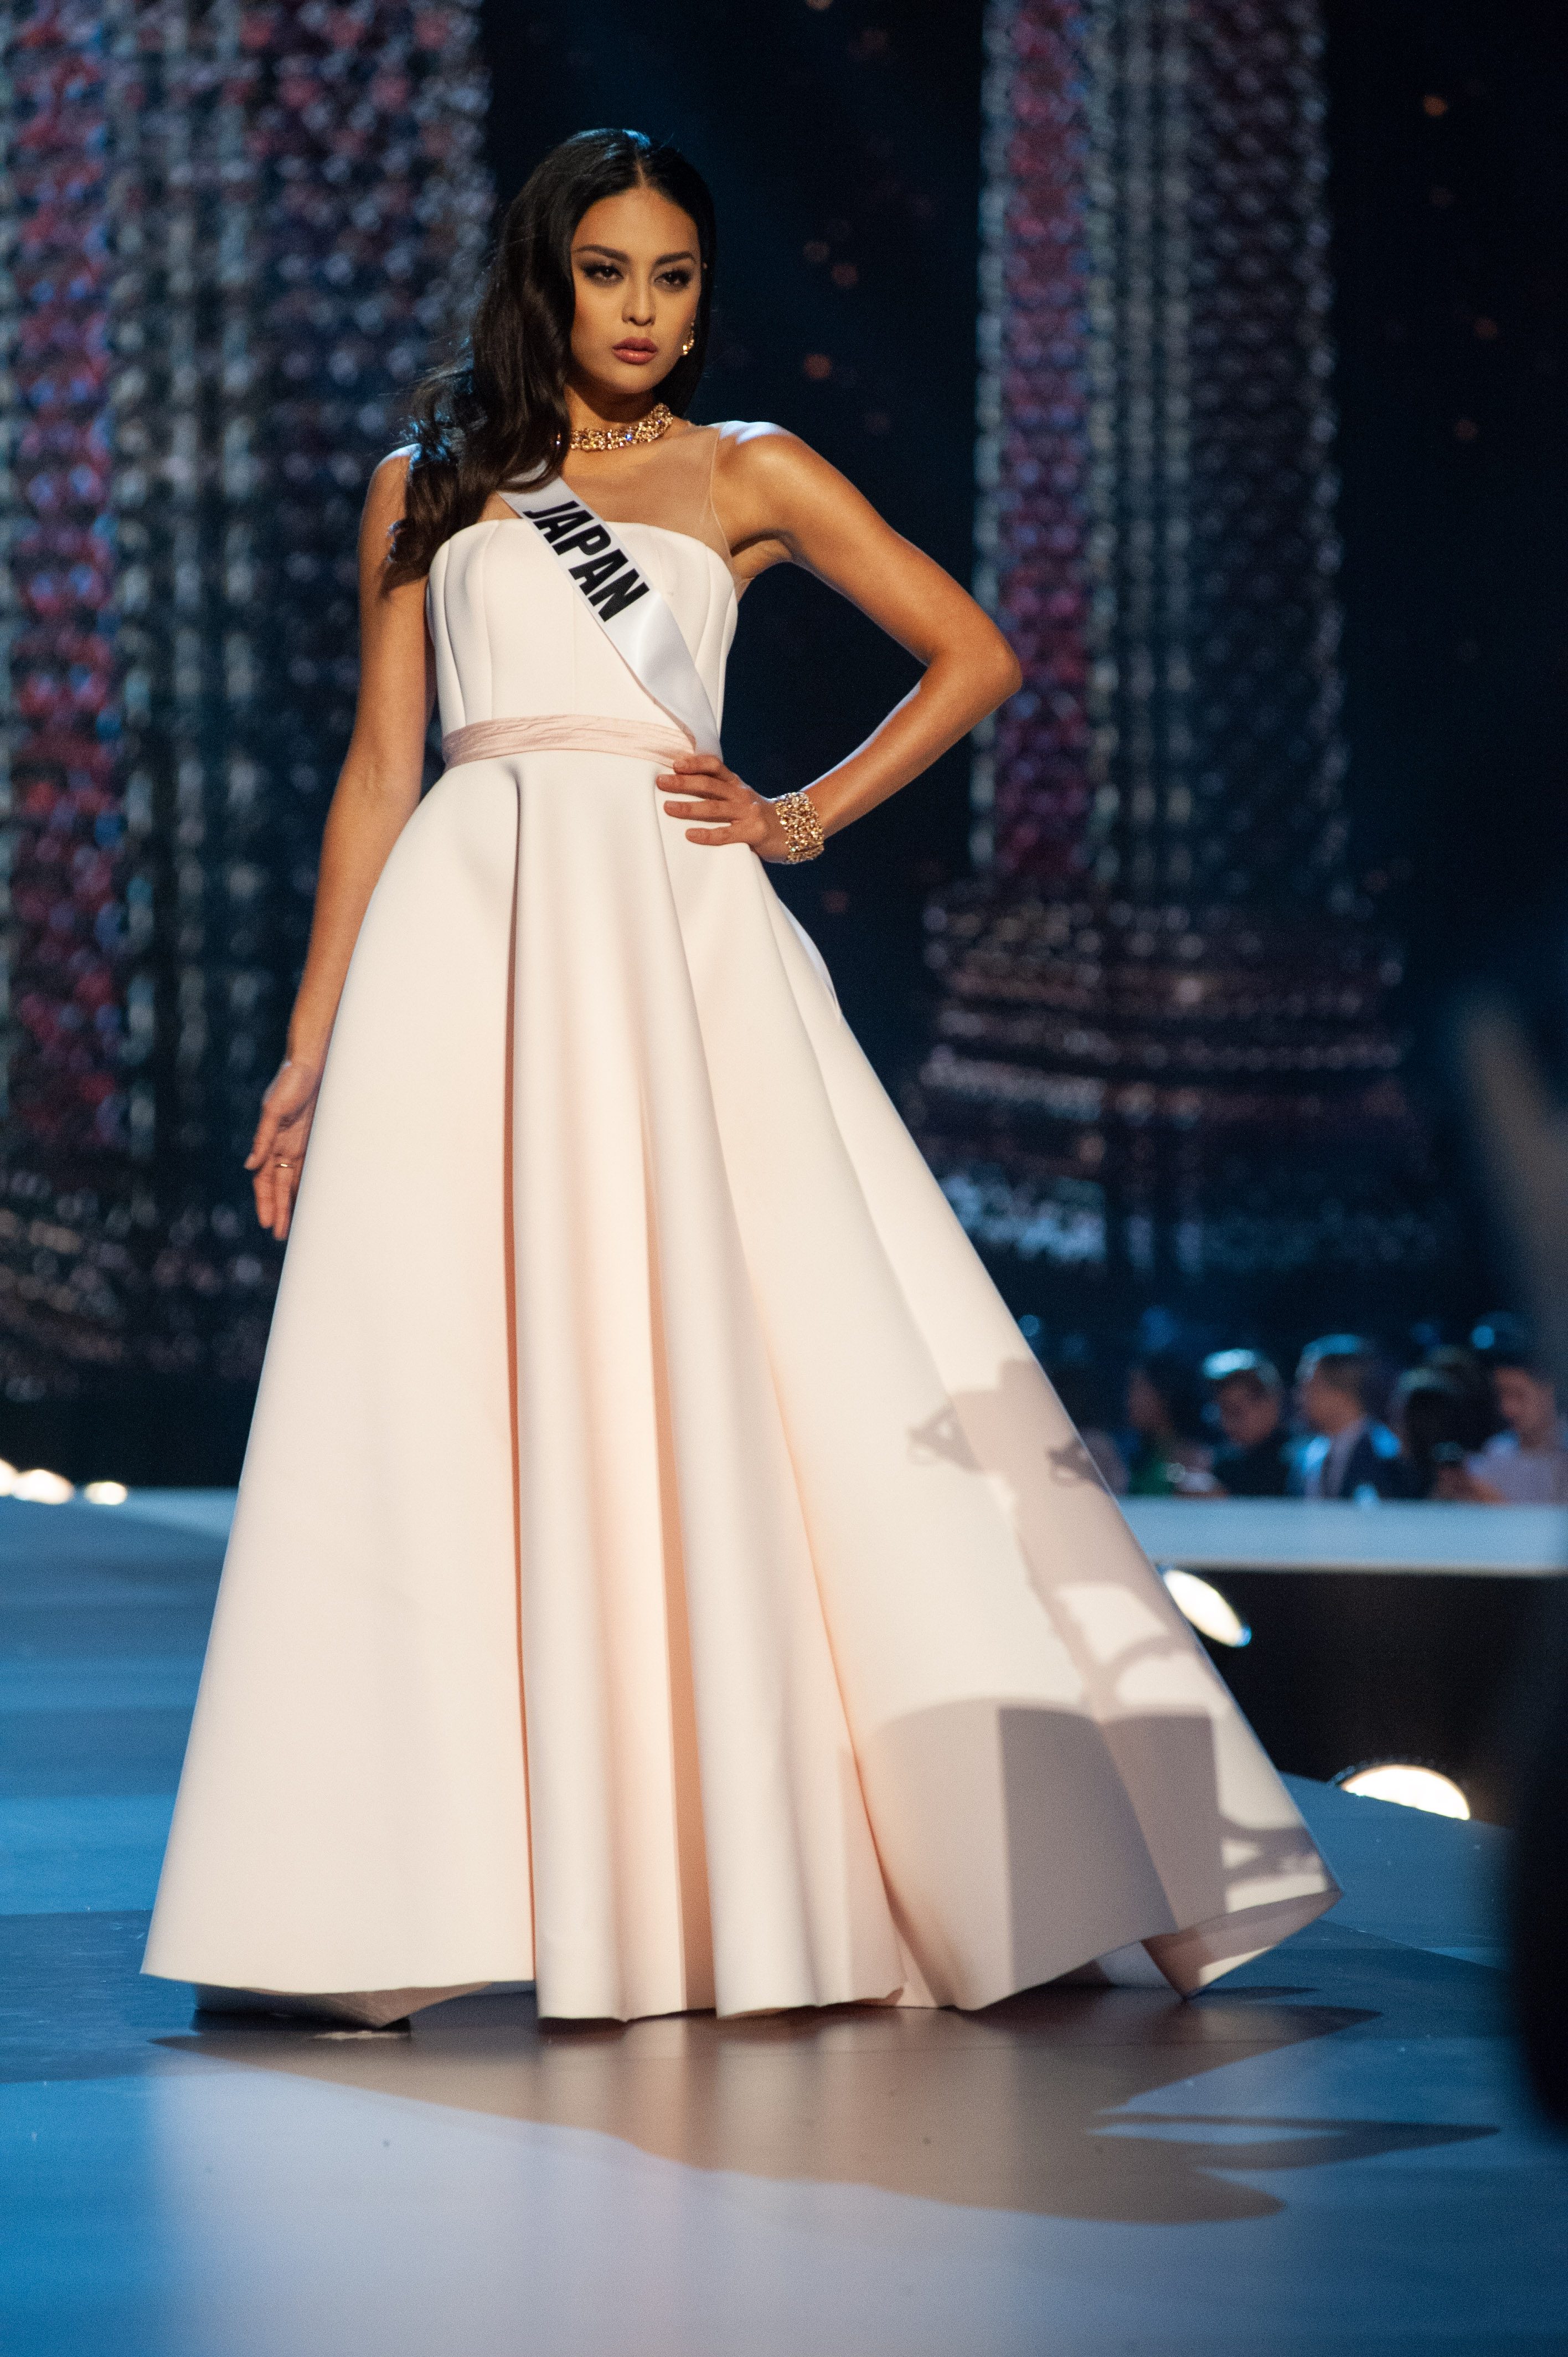 Filipino designers take spotlight in Miss Universe 2018 preliminaries